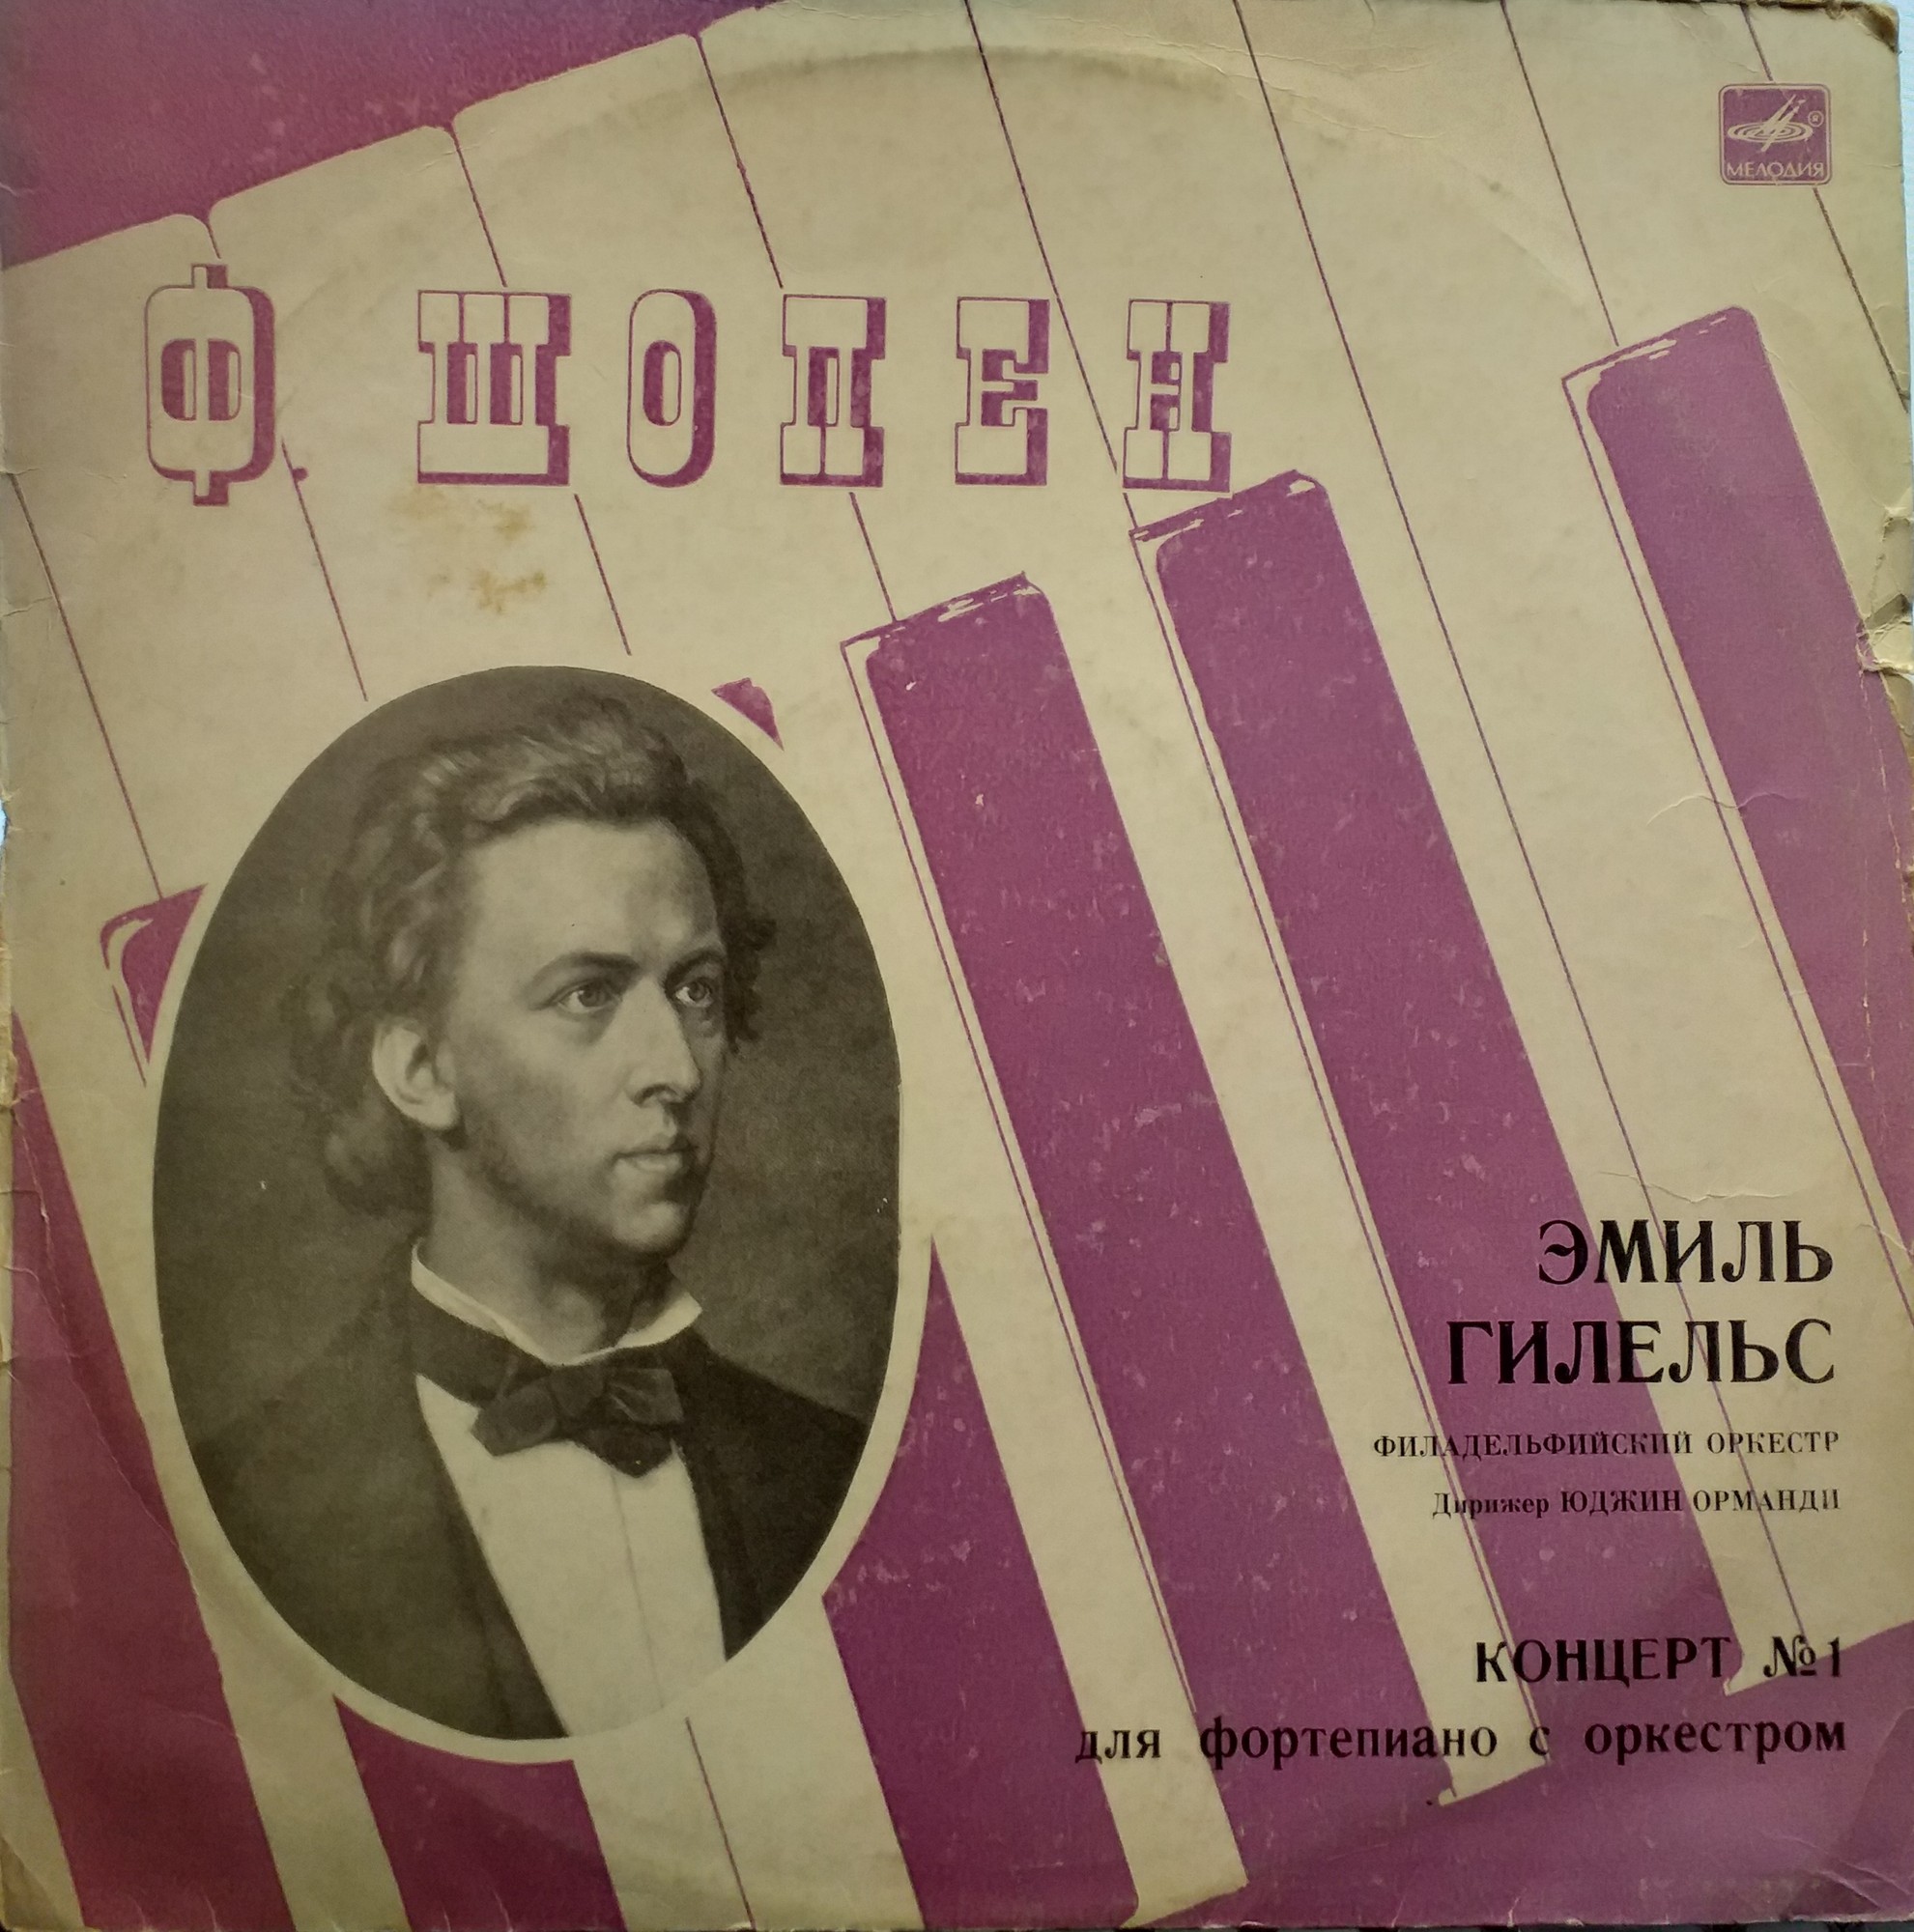 Ф. Шопен: Концерт № 1 для фортепиано с оркестром ми минор, соч. 11 (Э. Гилельс)